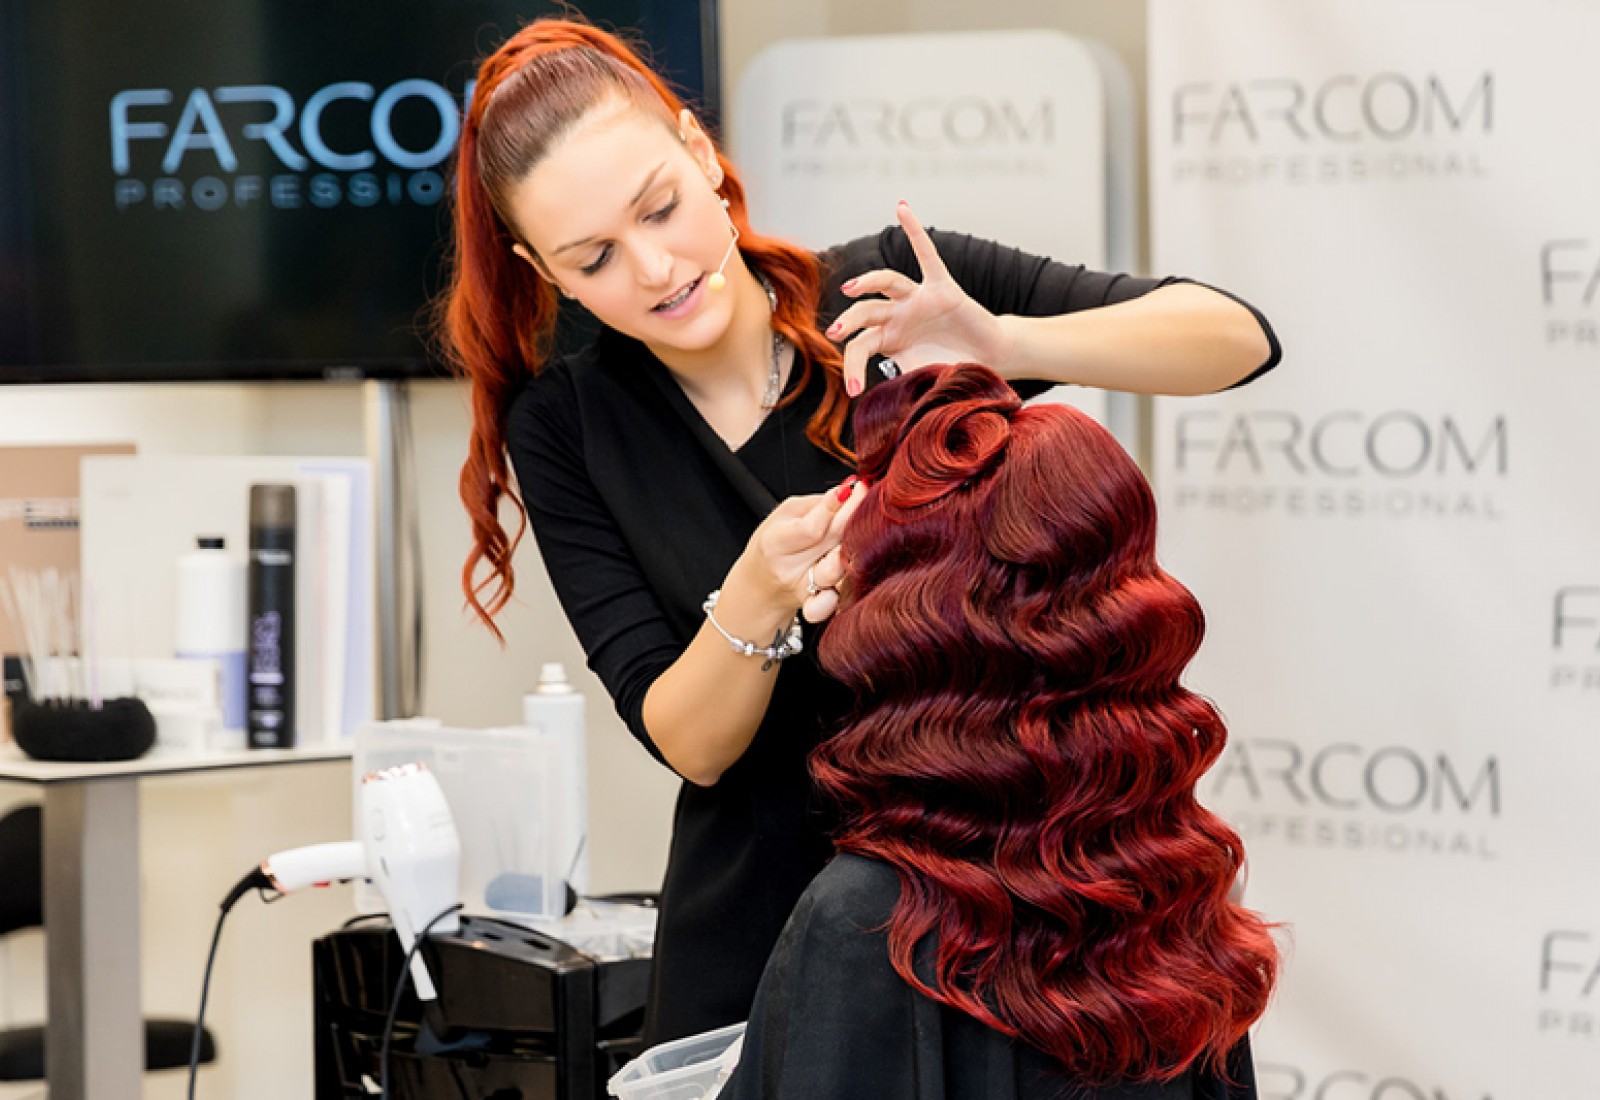 Farcom Professional – Εκπαιδευτικό Σεμινάριο Bridal & Evening Hairstyles